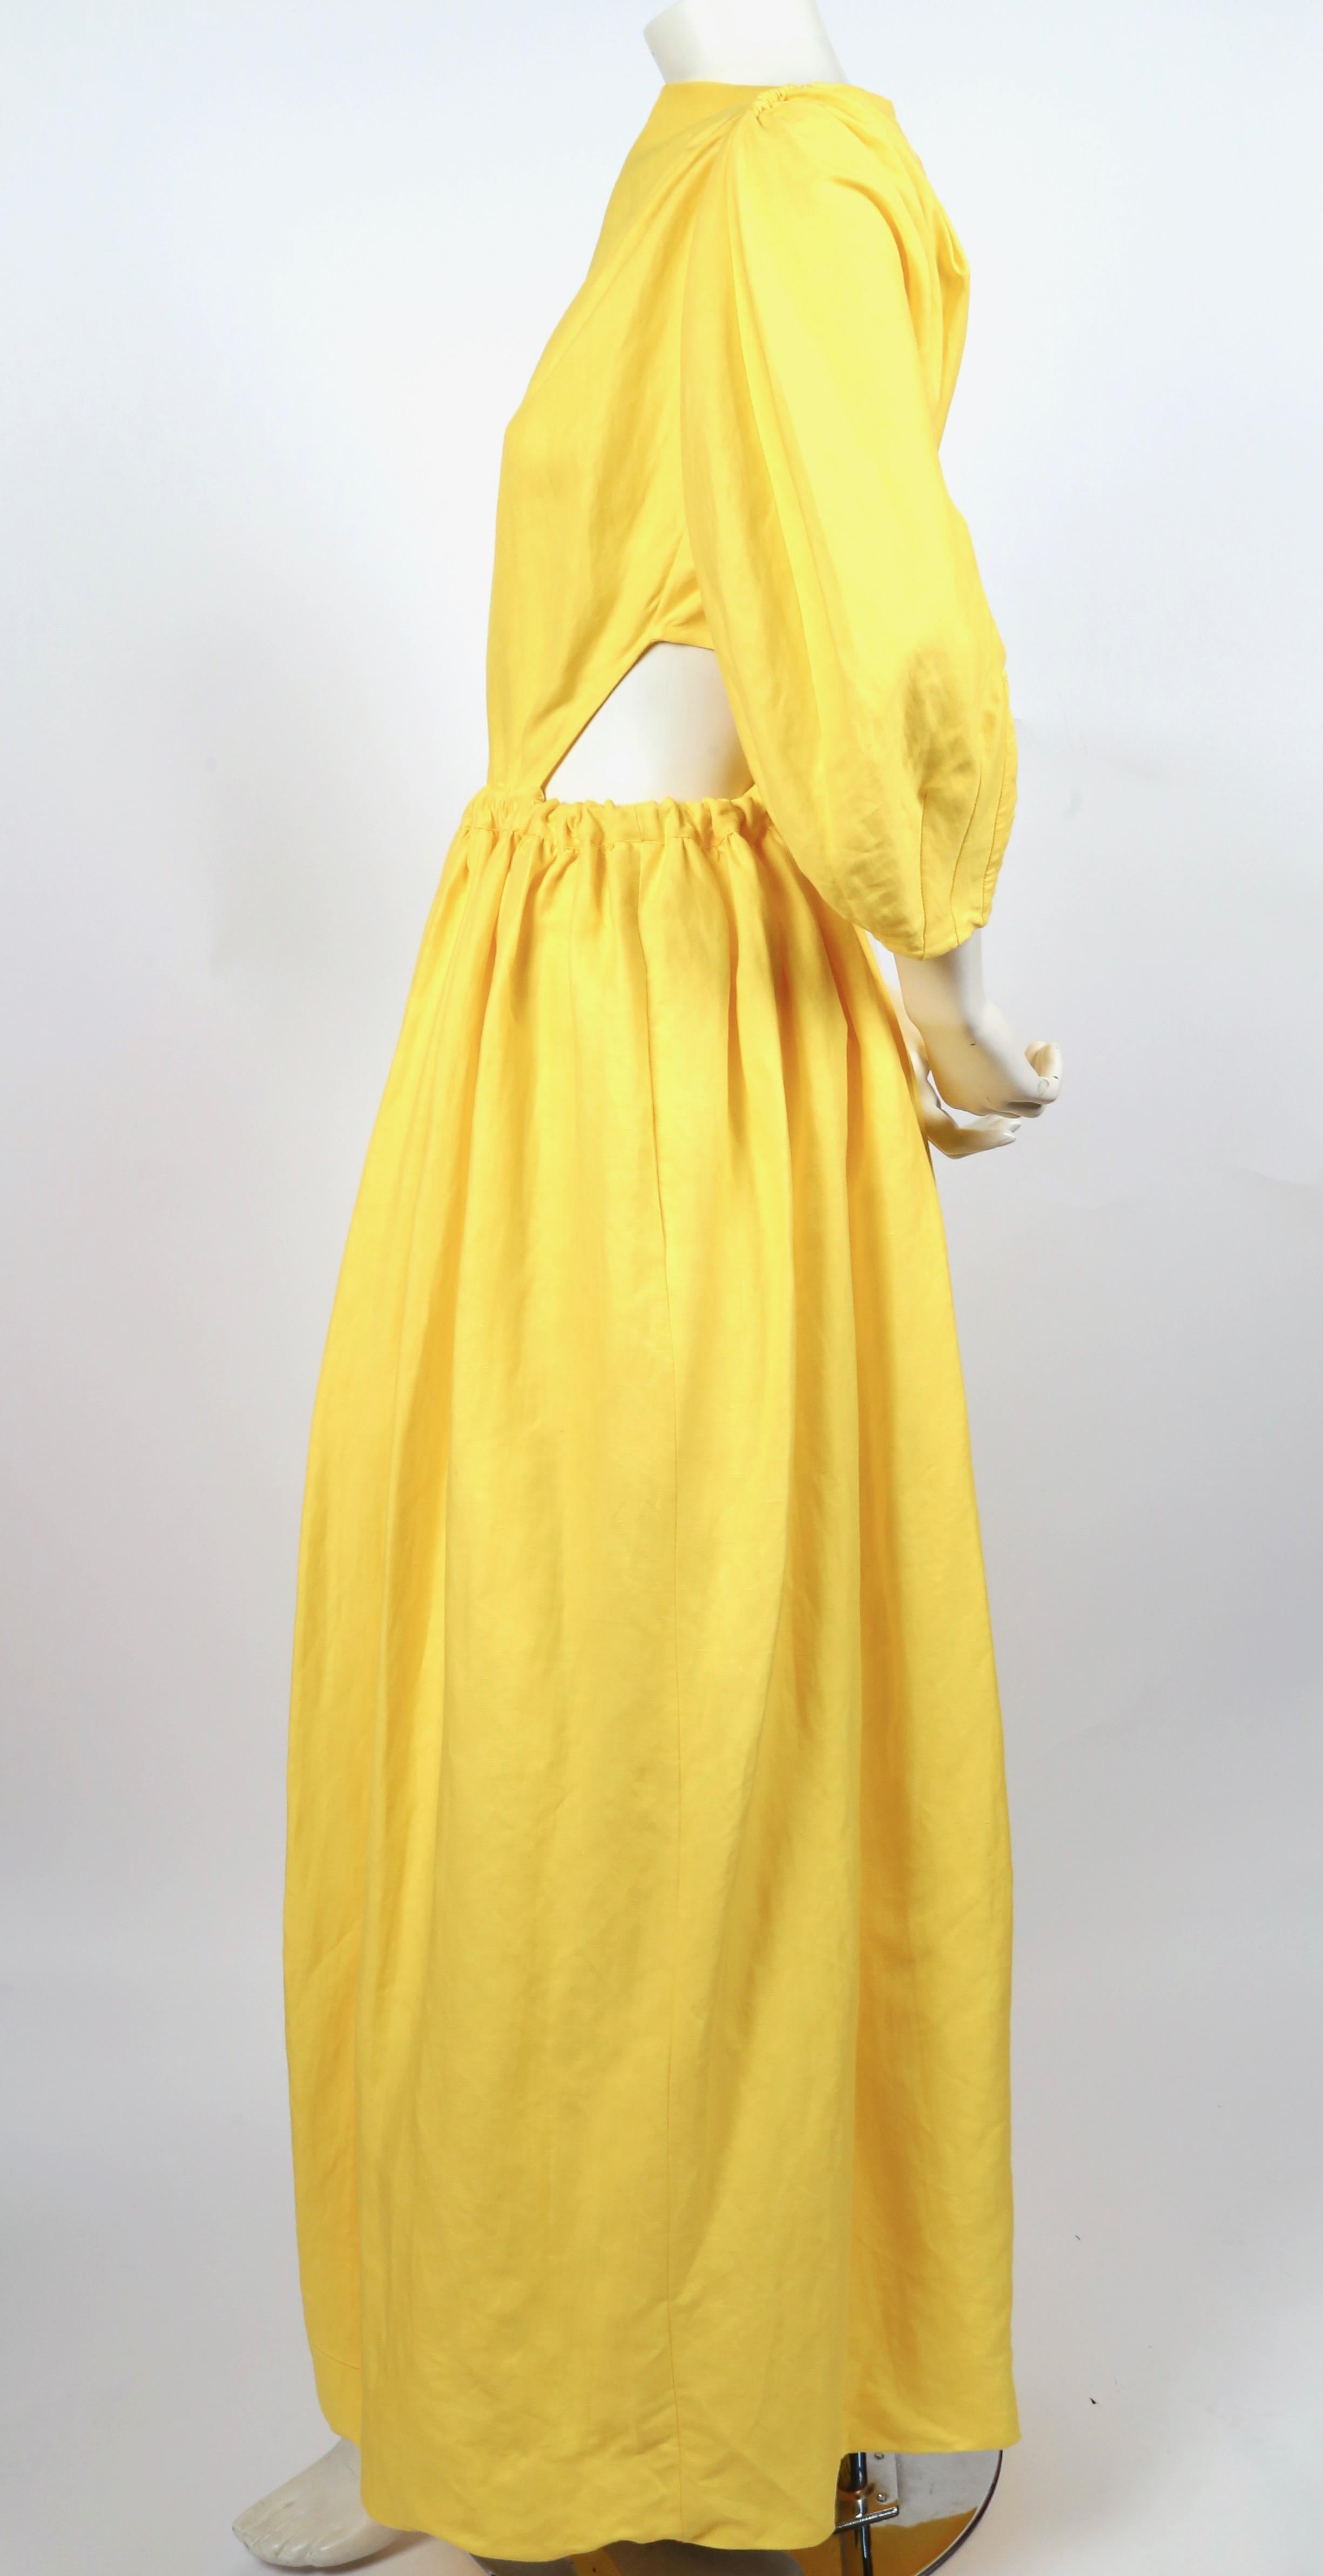 phoebe philo celine yellow dress